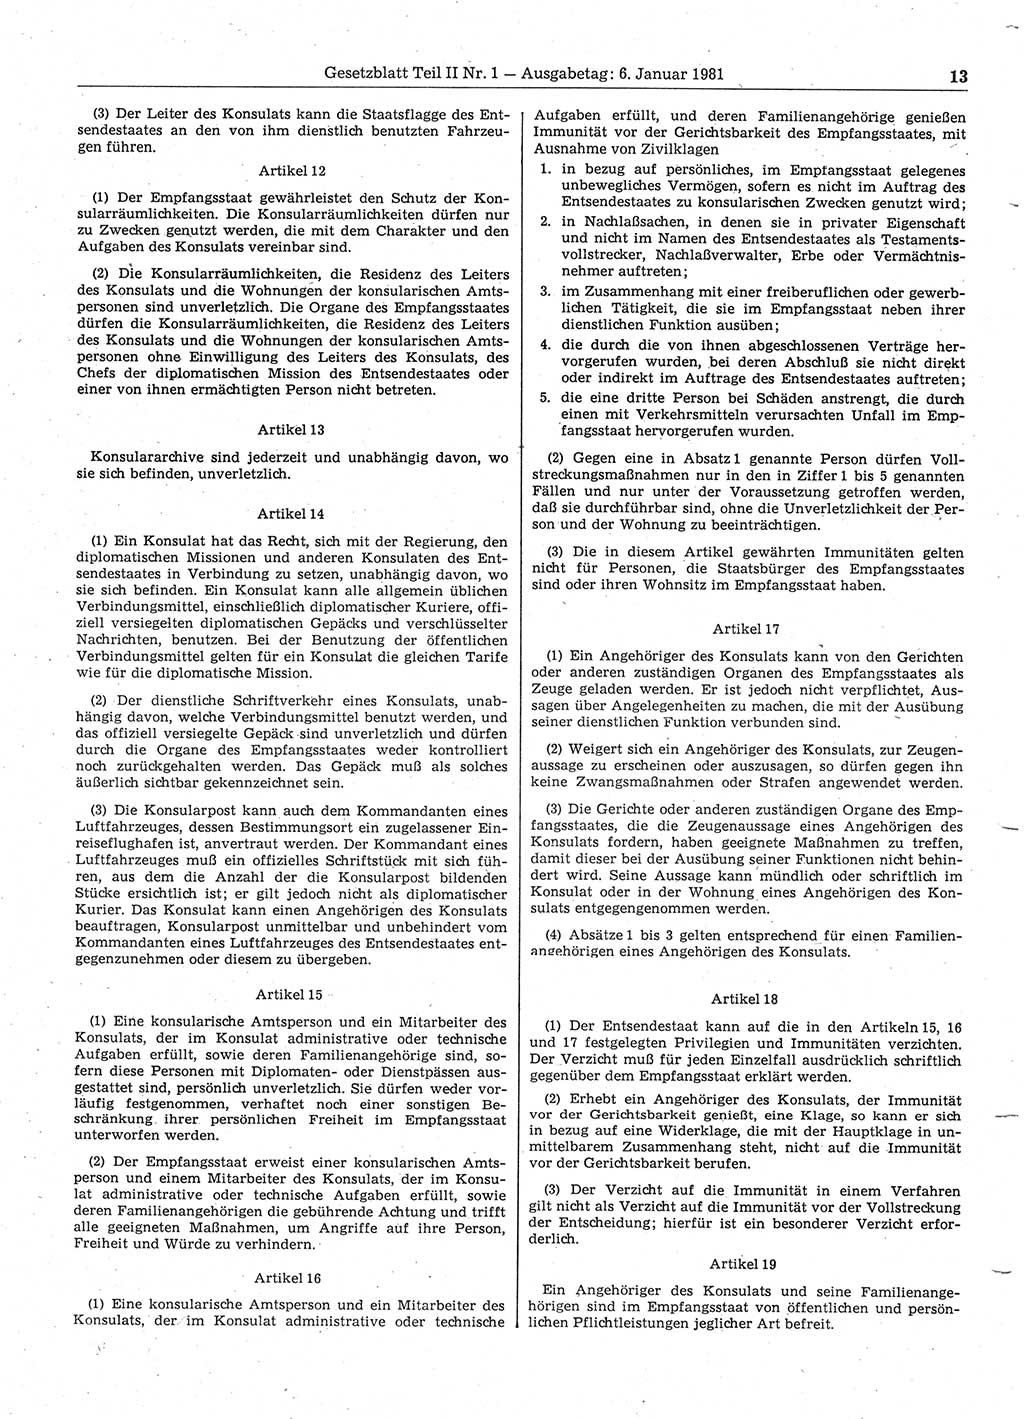 Gesetzblatt (GBl.) der Deutschen Demokratischen Republik (DDR) Teil ⅠⅠ 1981, Seite 13 (GBl. DDR ⅠⅠ 1981, S. 13)